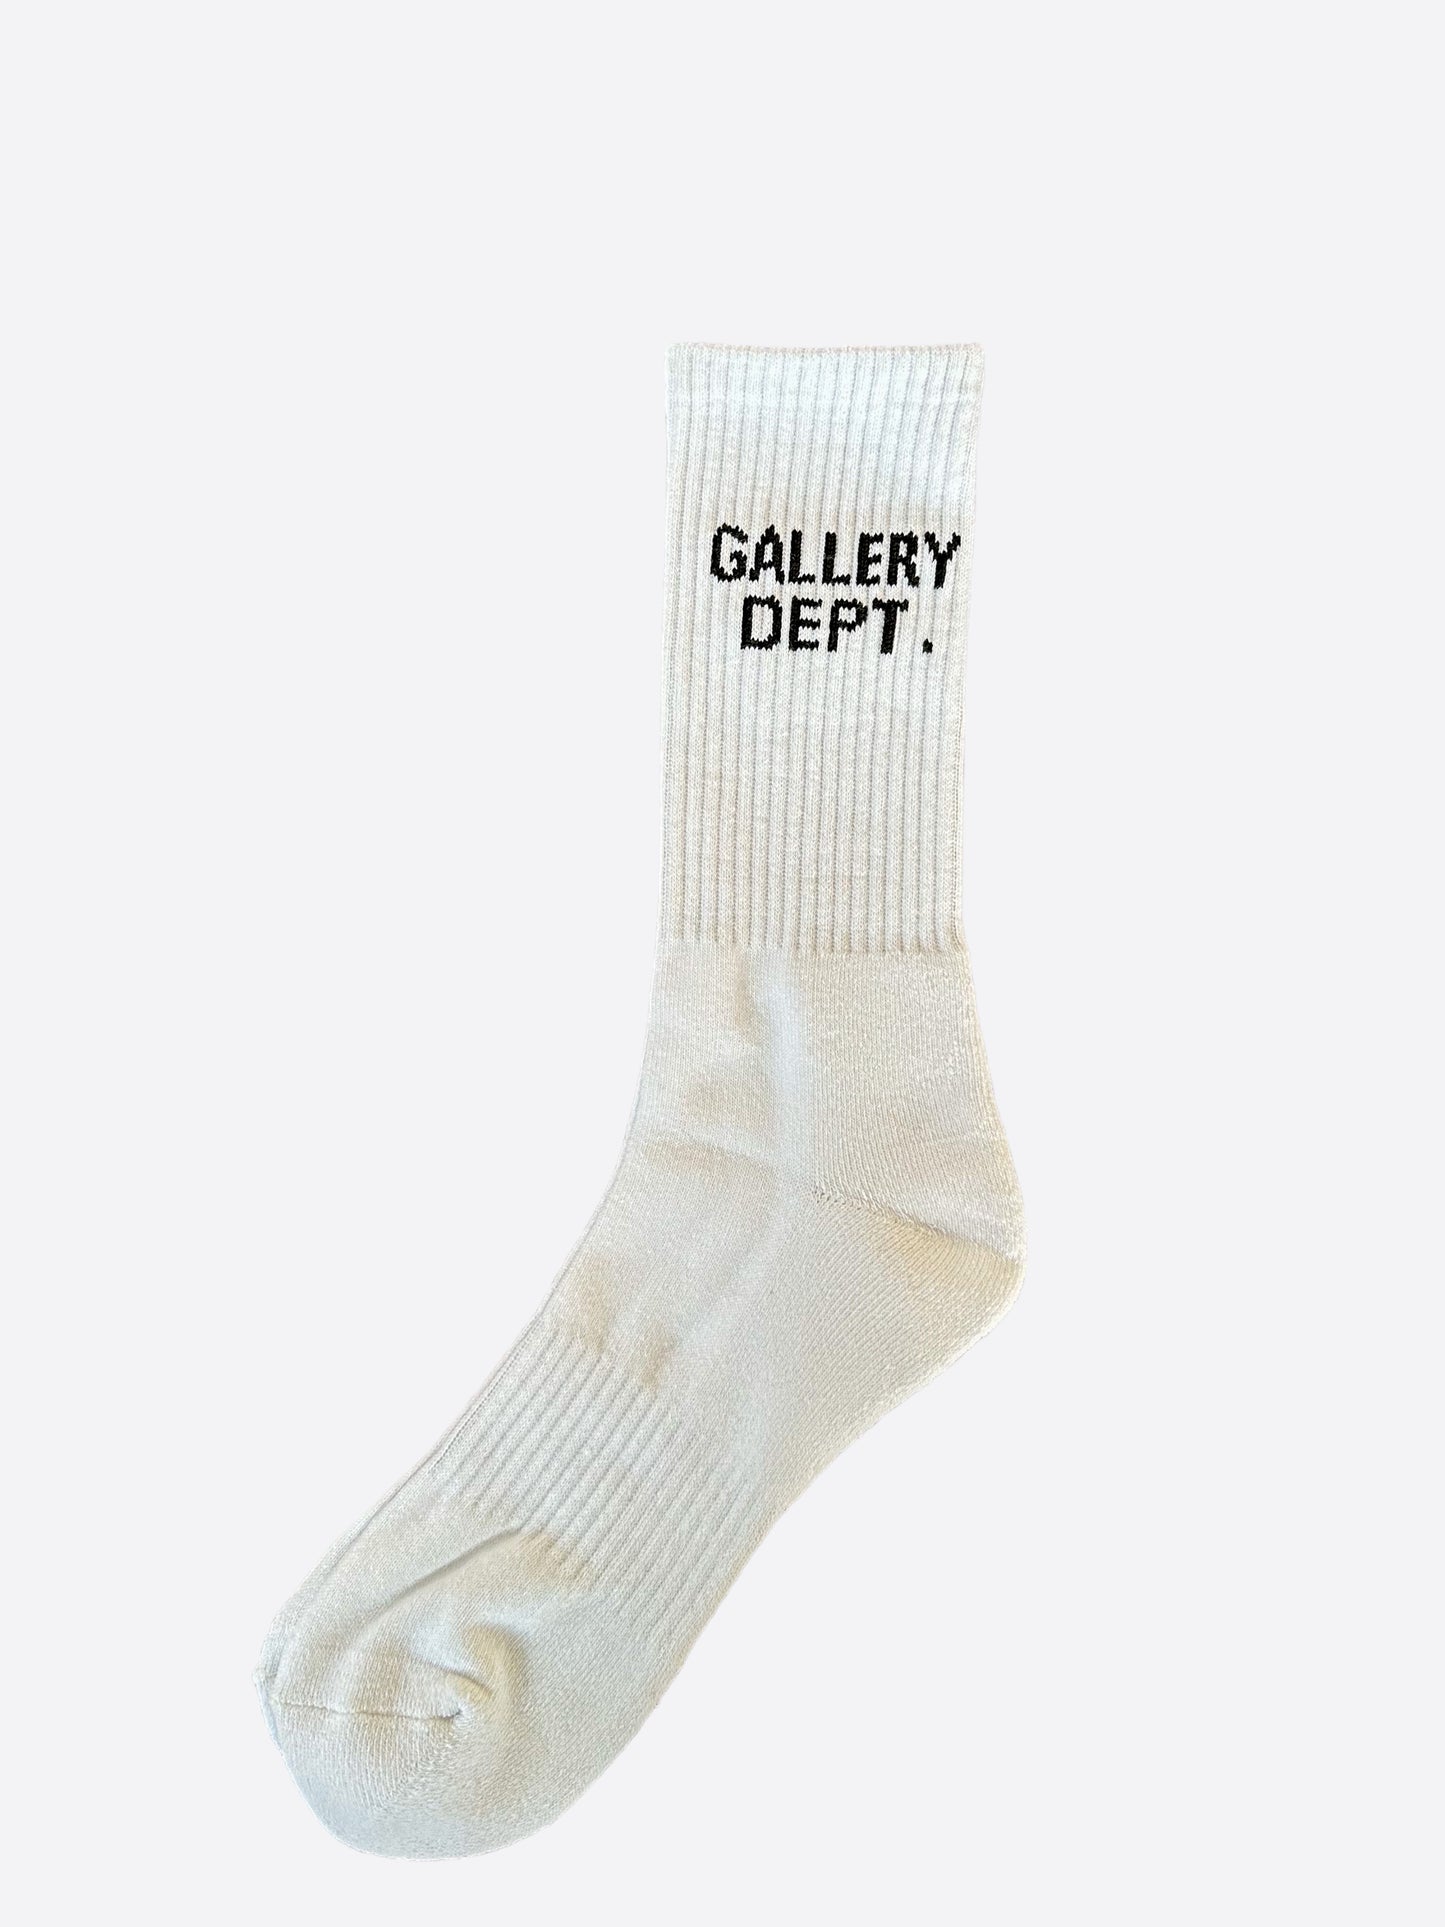 Gallery Dept White & Black Logo Socks